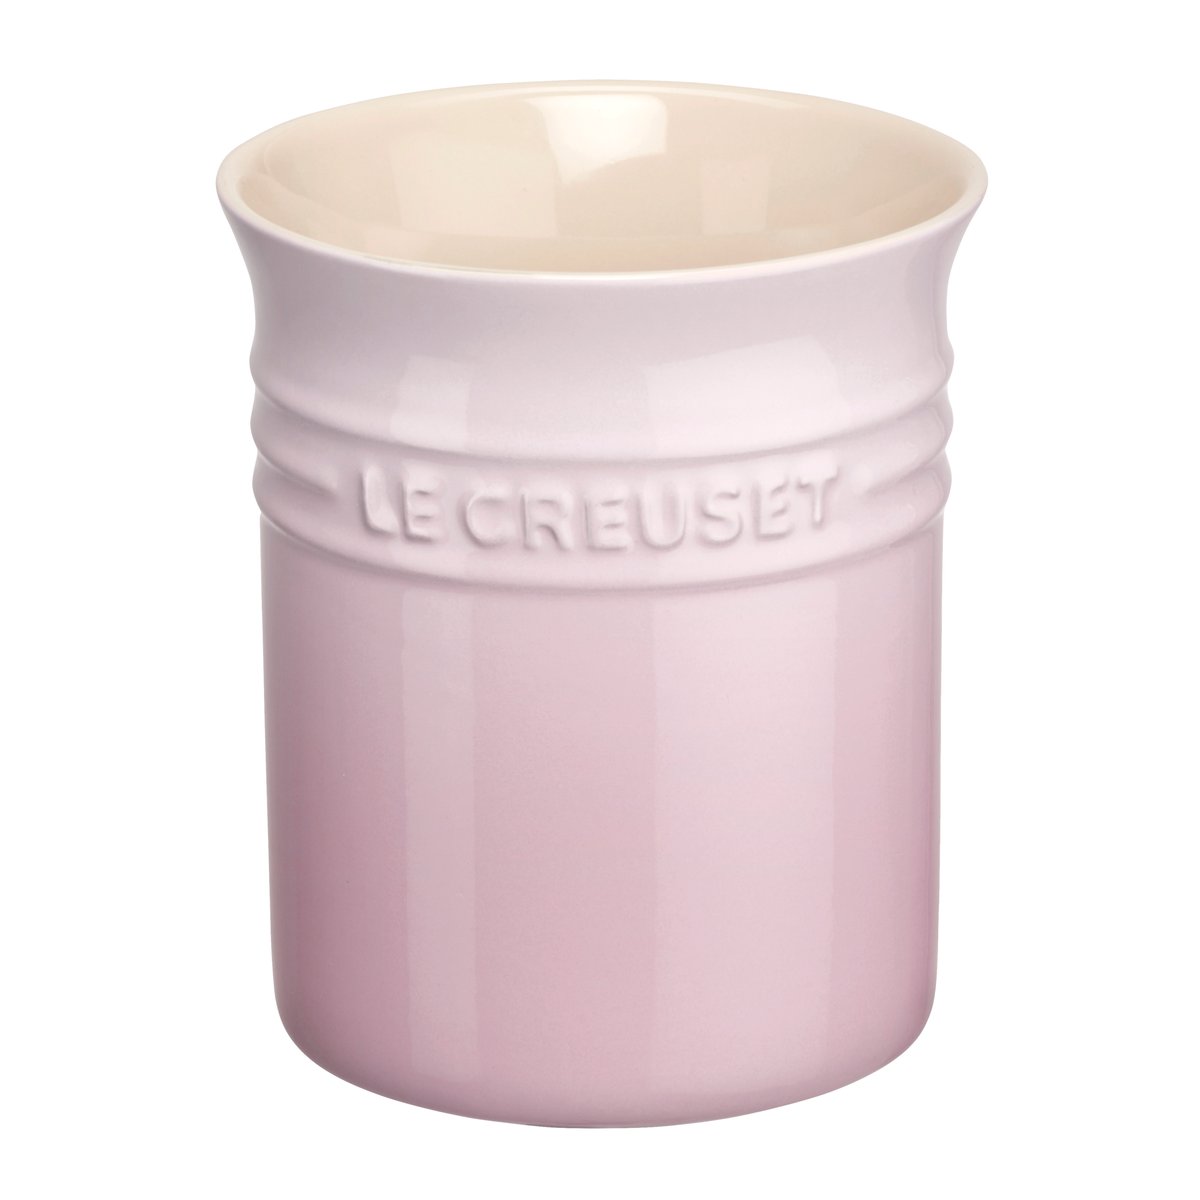 Le Creuset Le Creuset bestik- og redskabsopbevaring 1,1 L Shell Pink